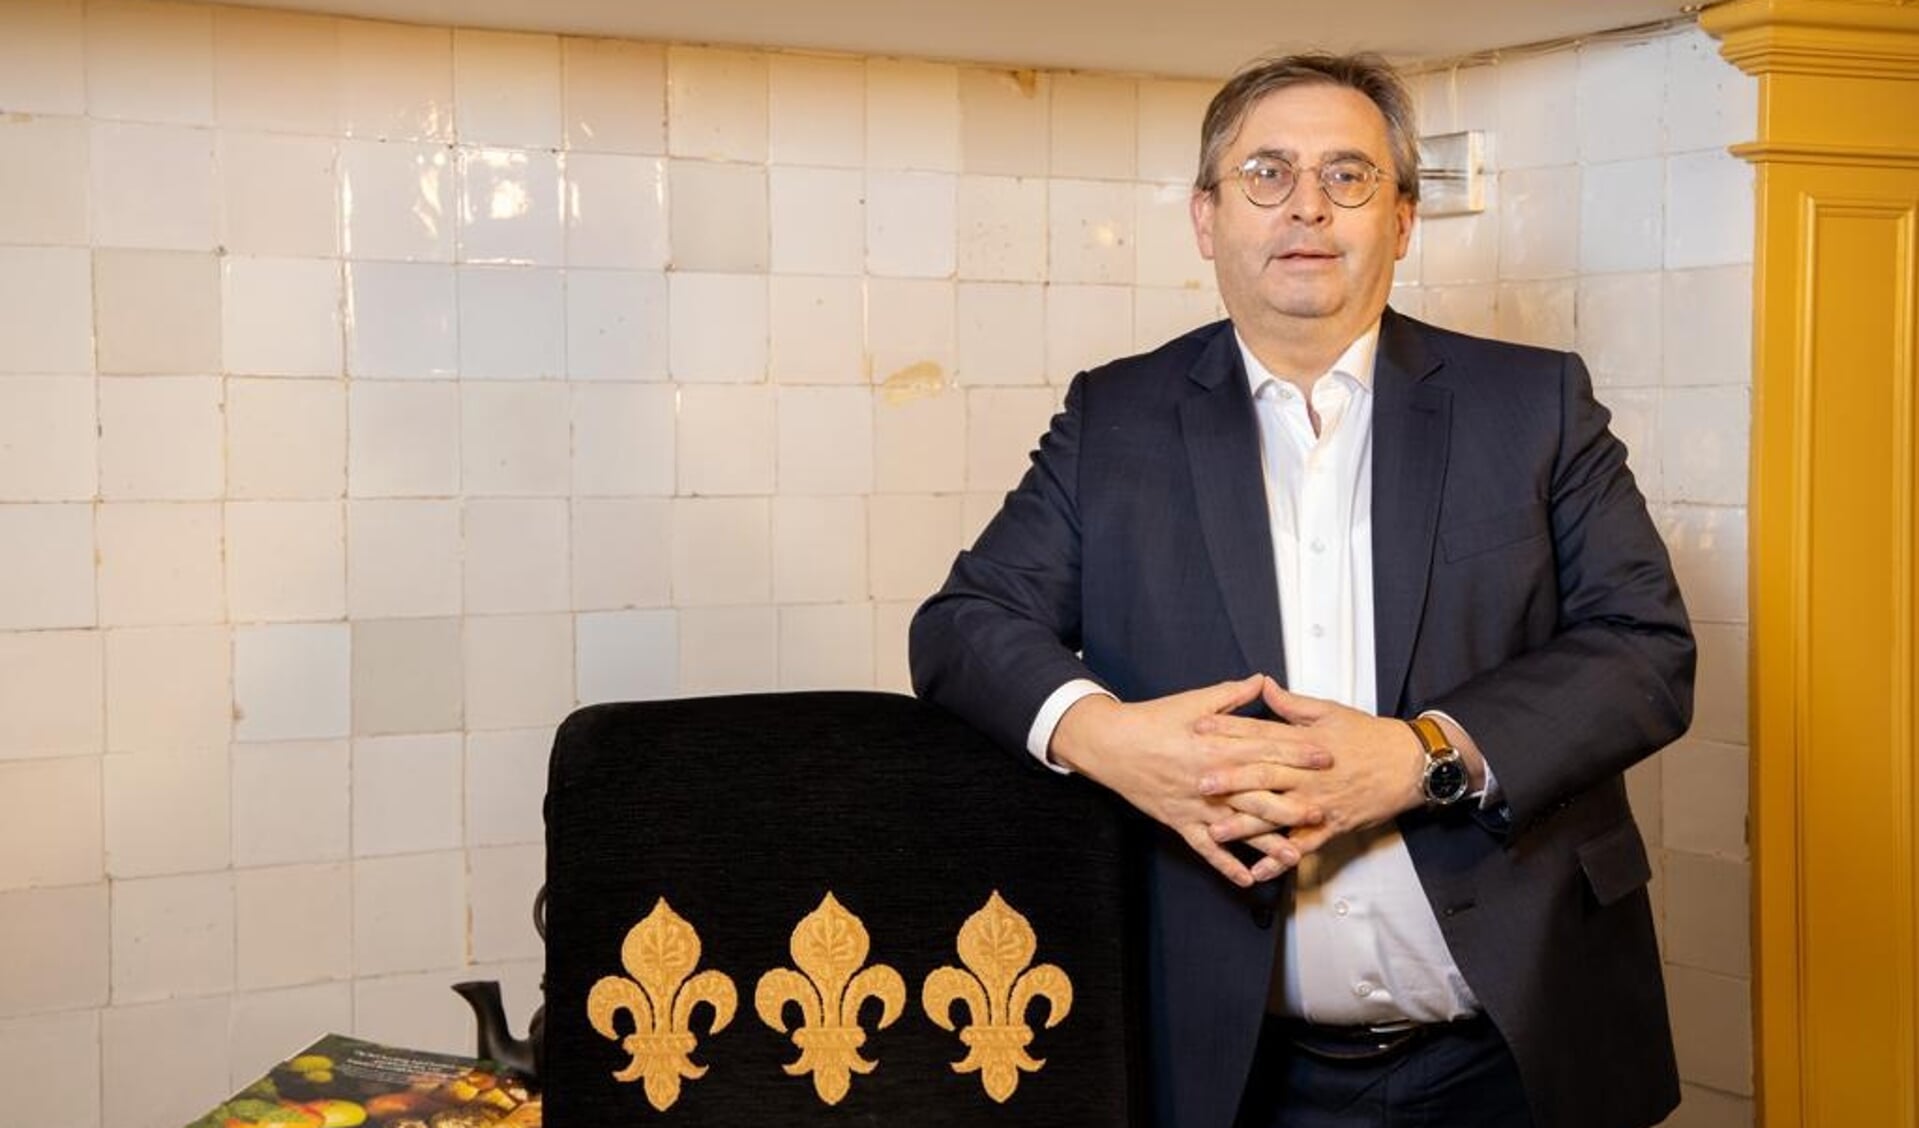 Wethouder Gerard van Deelen voelt mee met ondernemers tijdens coronacrisis